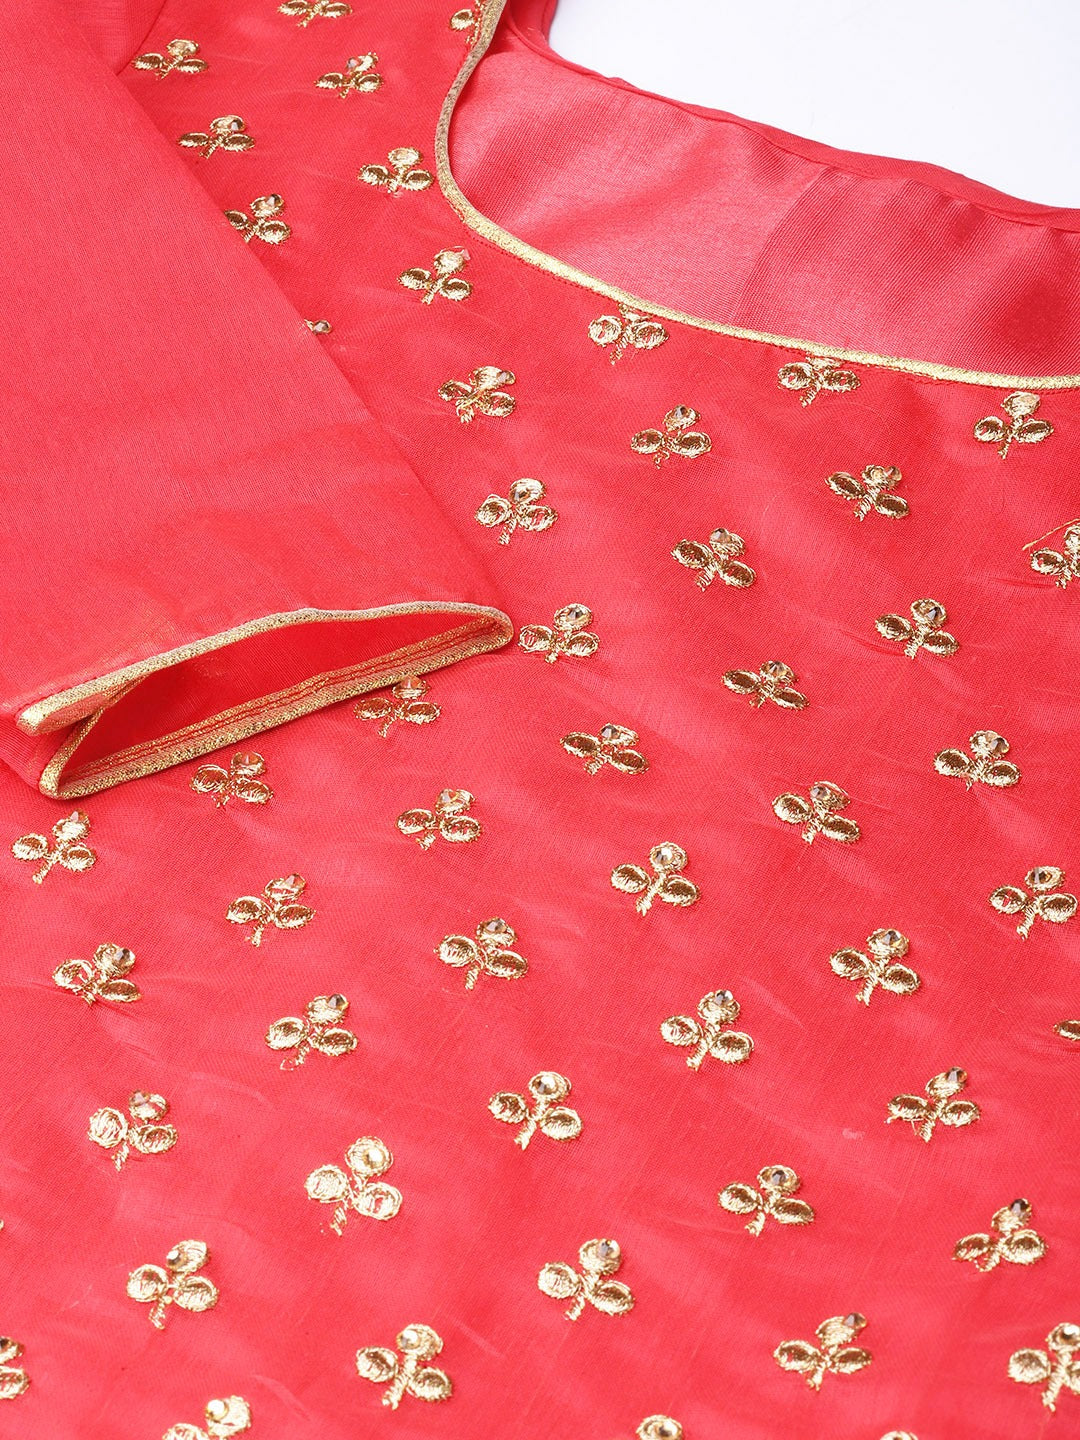 Coral Red & Golden Embellished Unstitched Dress Material